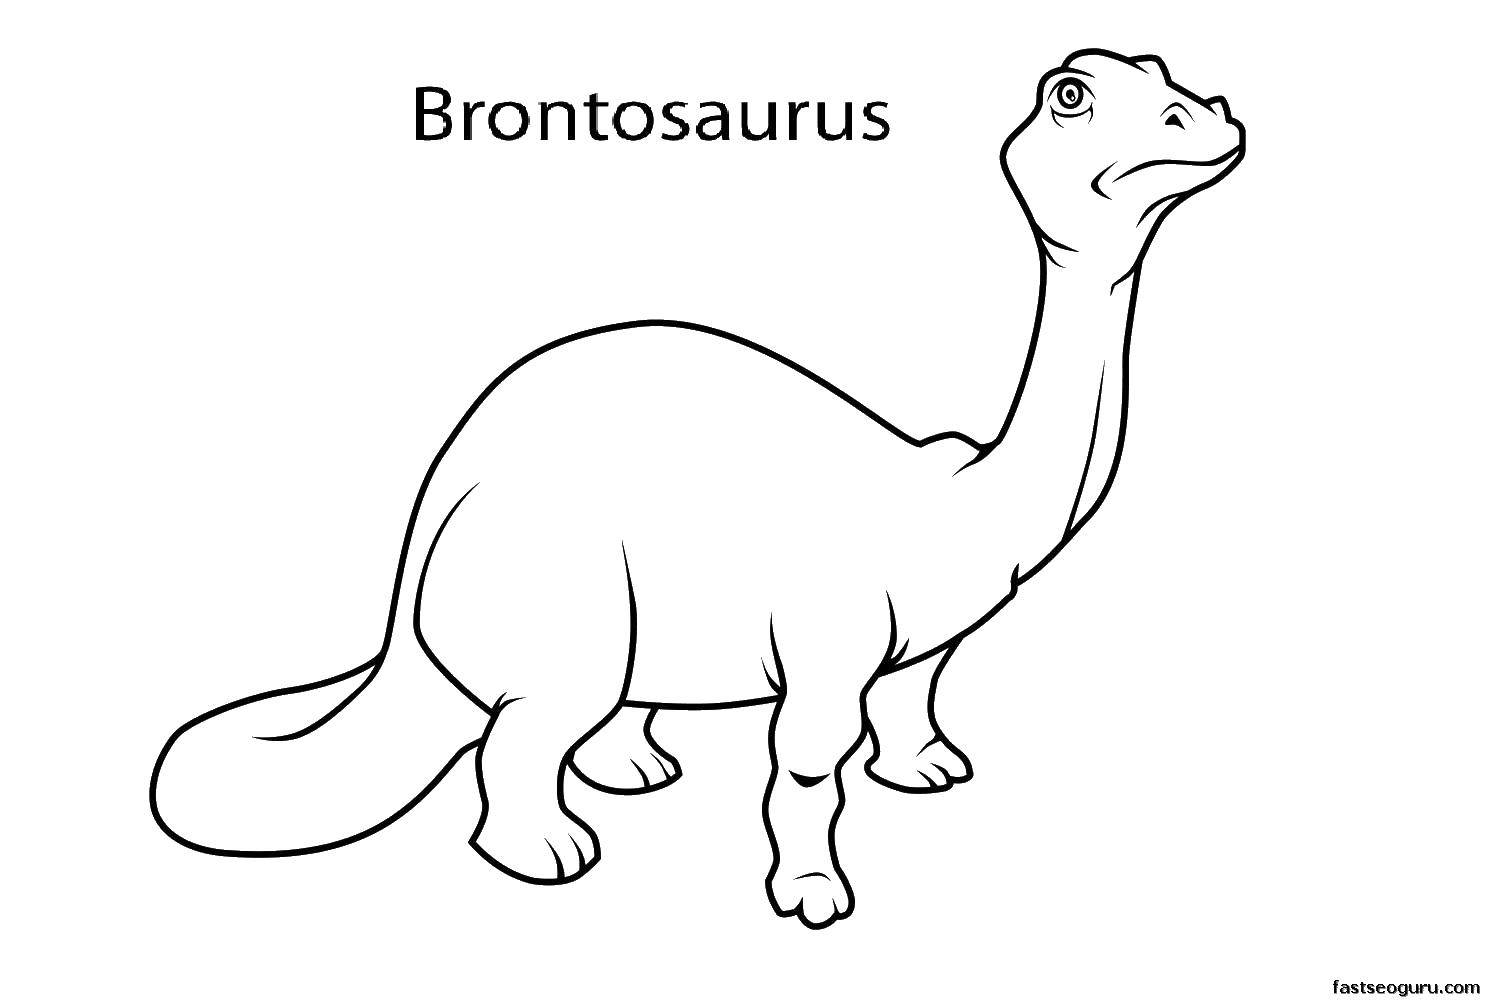 Coloring Brontosaurus. Category dinosaur. Tags:  Brontosaurus, dinosaur, tail.